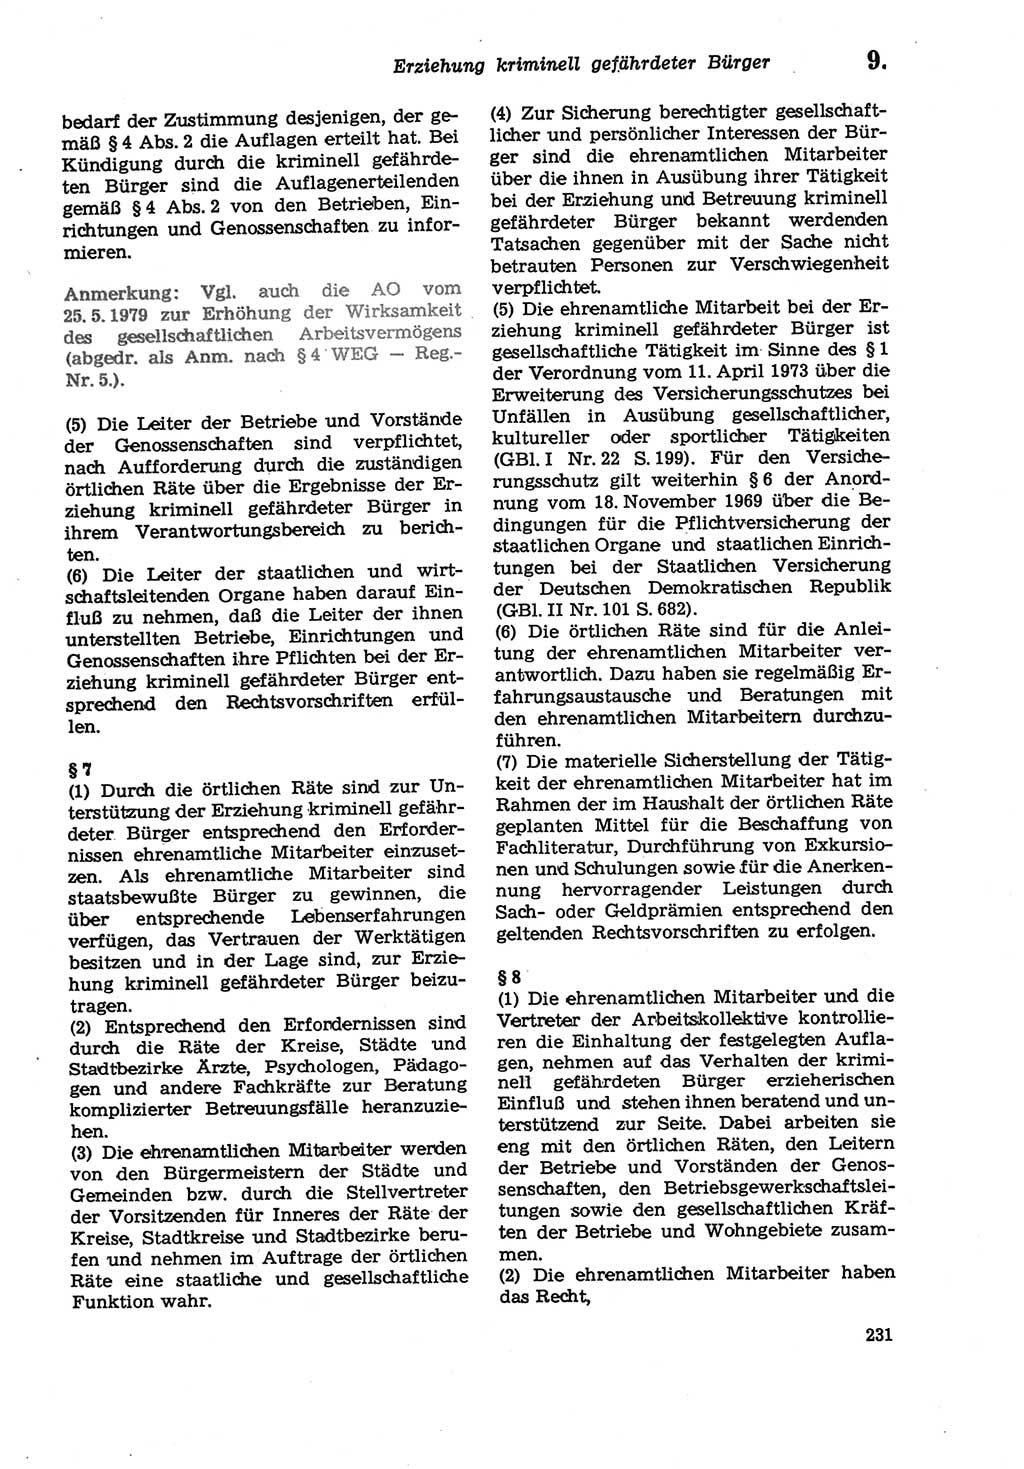 Strafprozeßordnung (StPO) der Deutschen Demokratischen Republik (DDR) sowie angrenzende Gesetze und Bestimmungen 1979, Seite 231 (StPO DDR Ges. Best. 1979, S. 231)